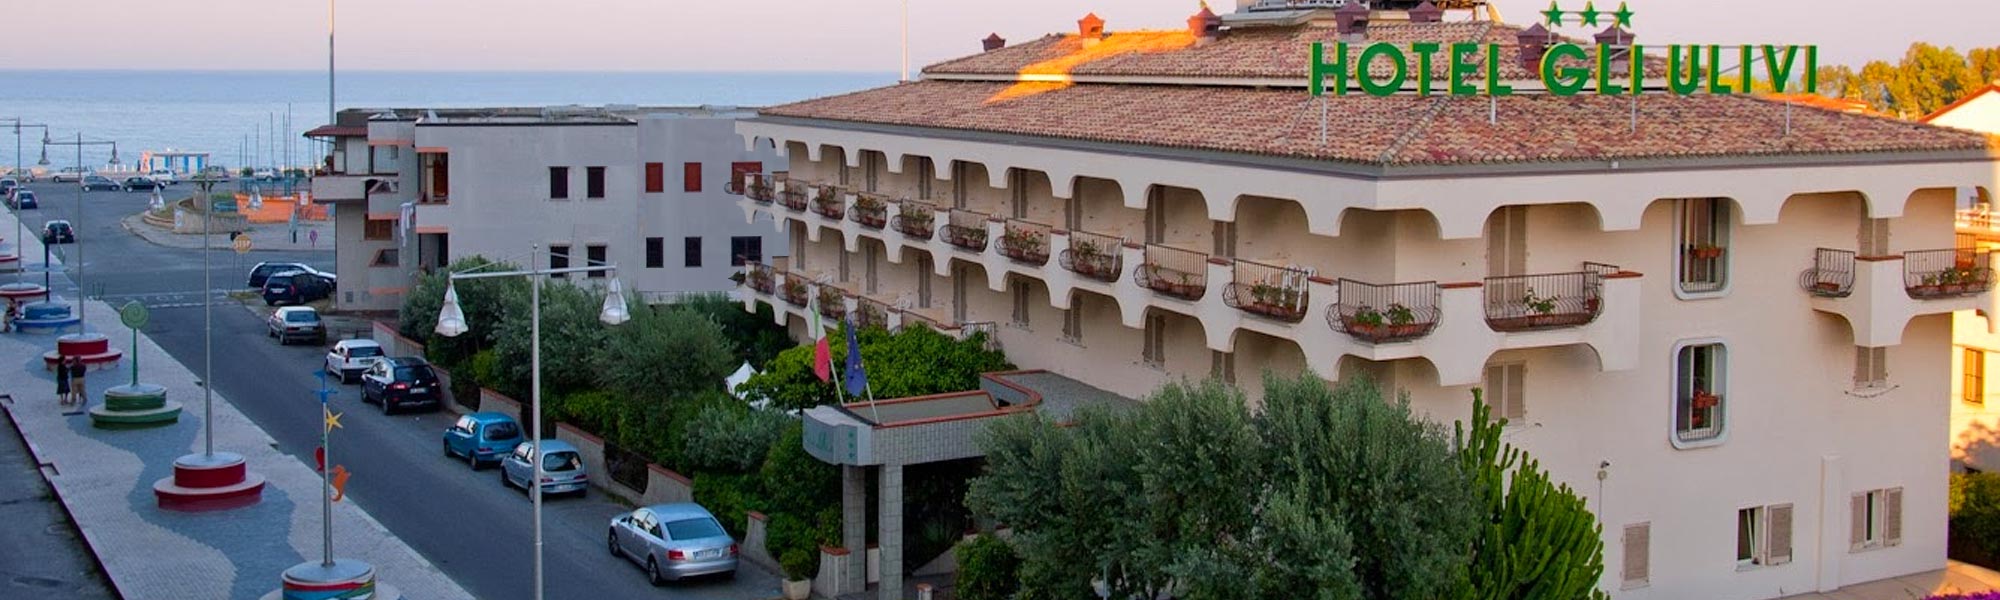 Hotel Gli Ulivi Soverato, Italy